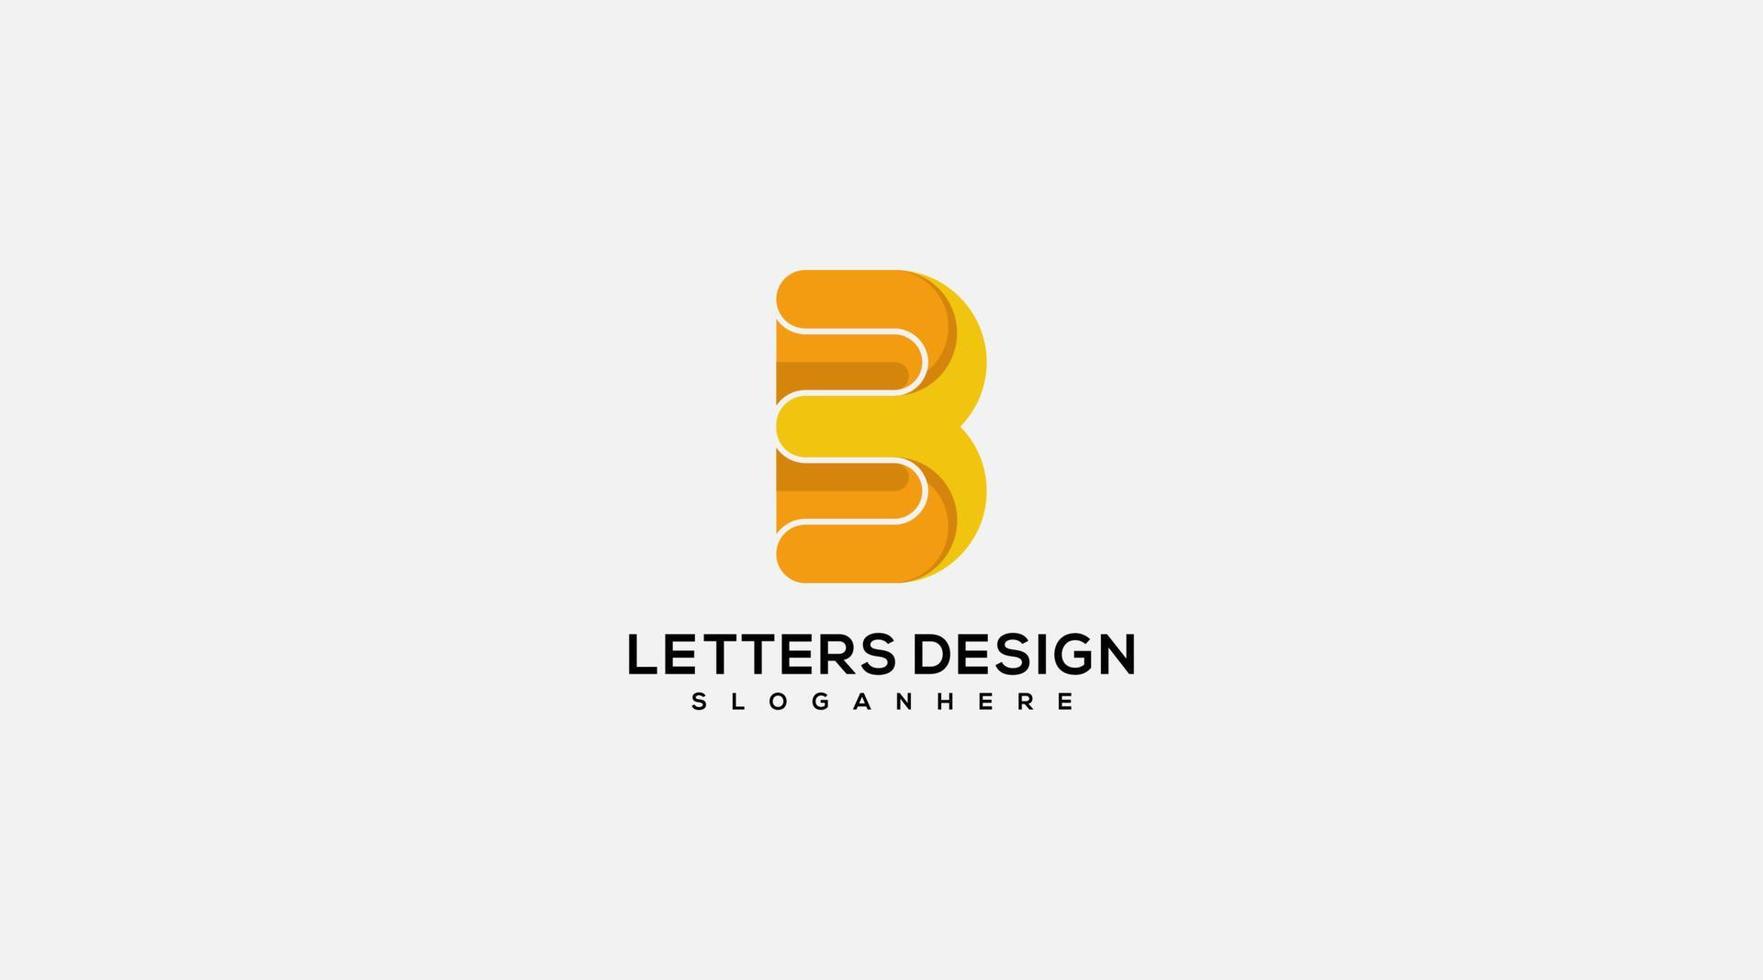 plantilla de vector de diseño de logotipo de diseño de letra b